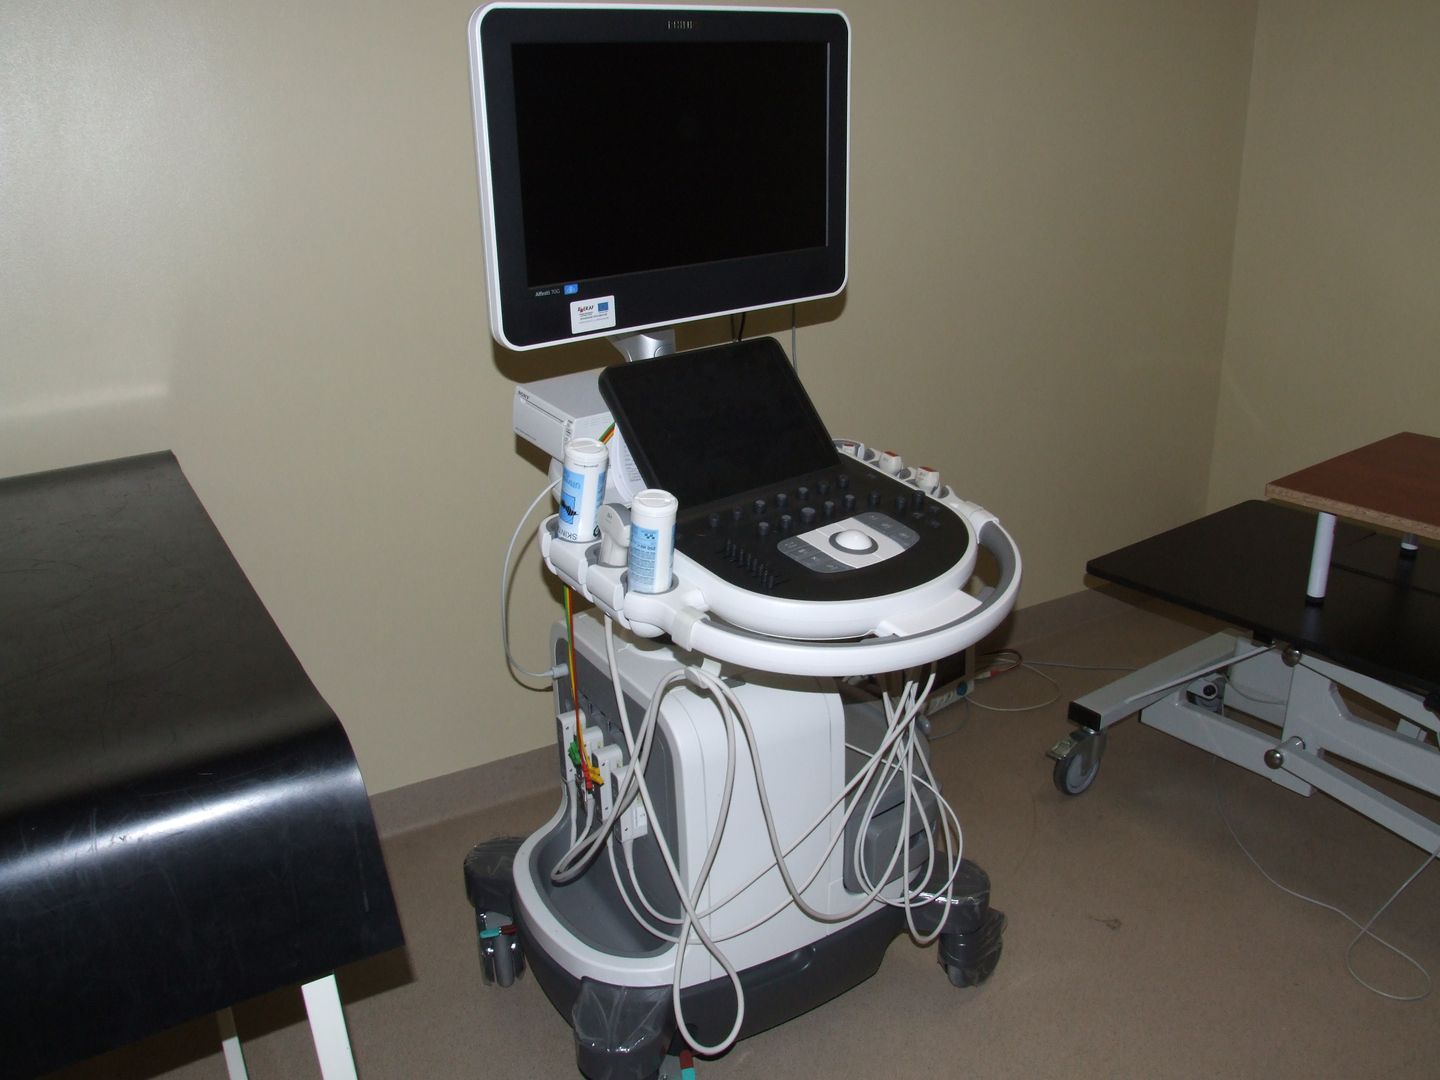 Ultrasound system